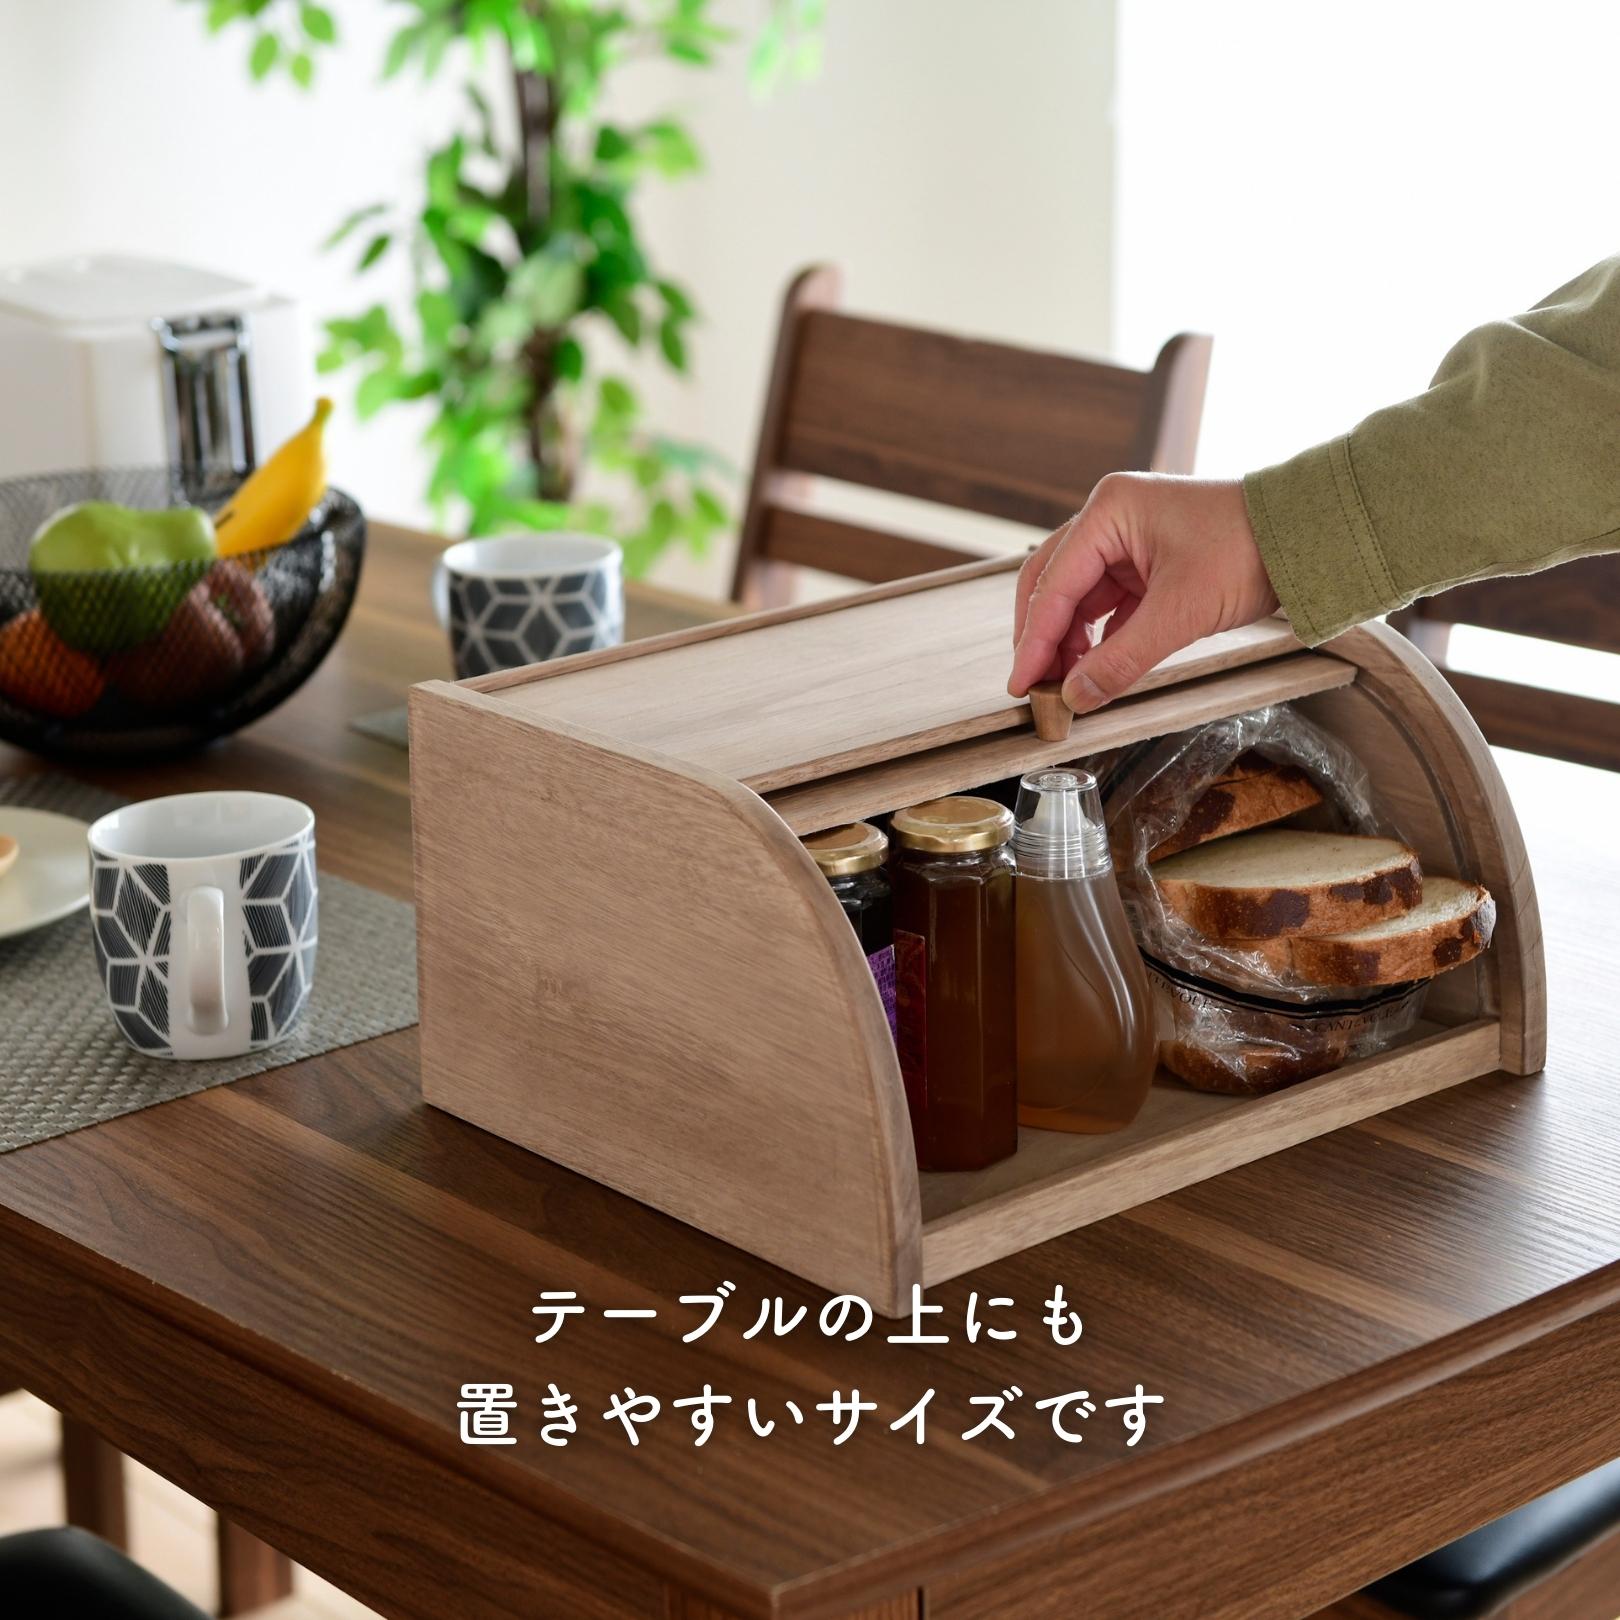 パンケースブレッドケース イマン 木製 - 収納/キッチン雑貨